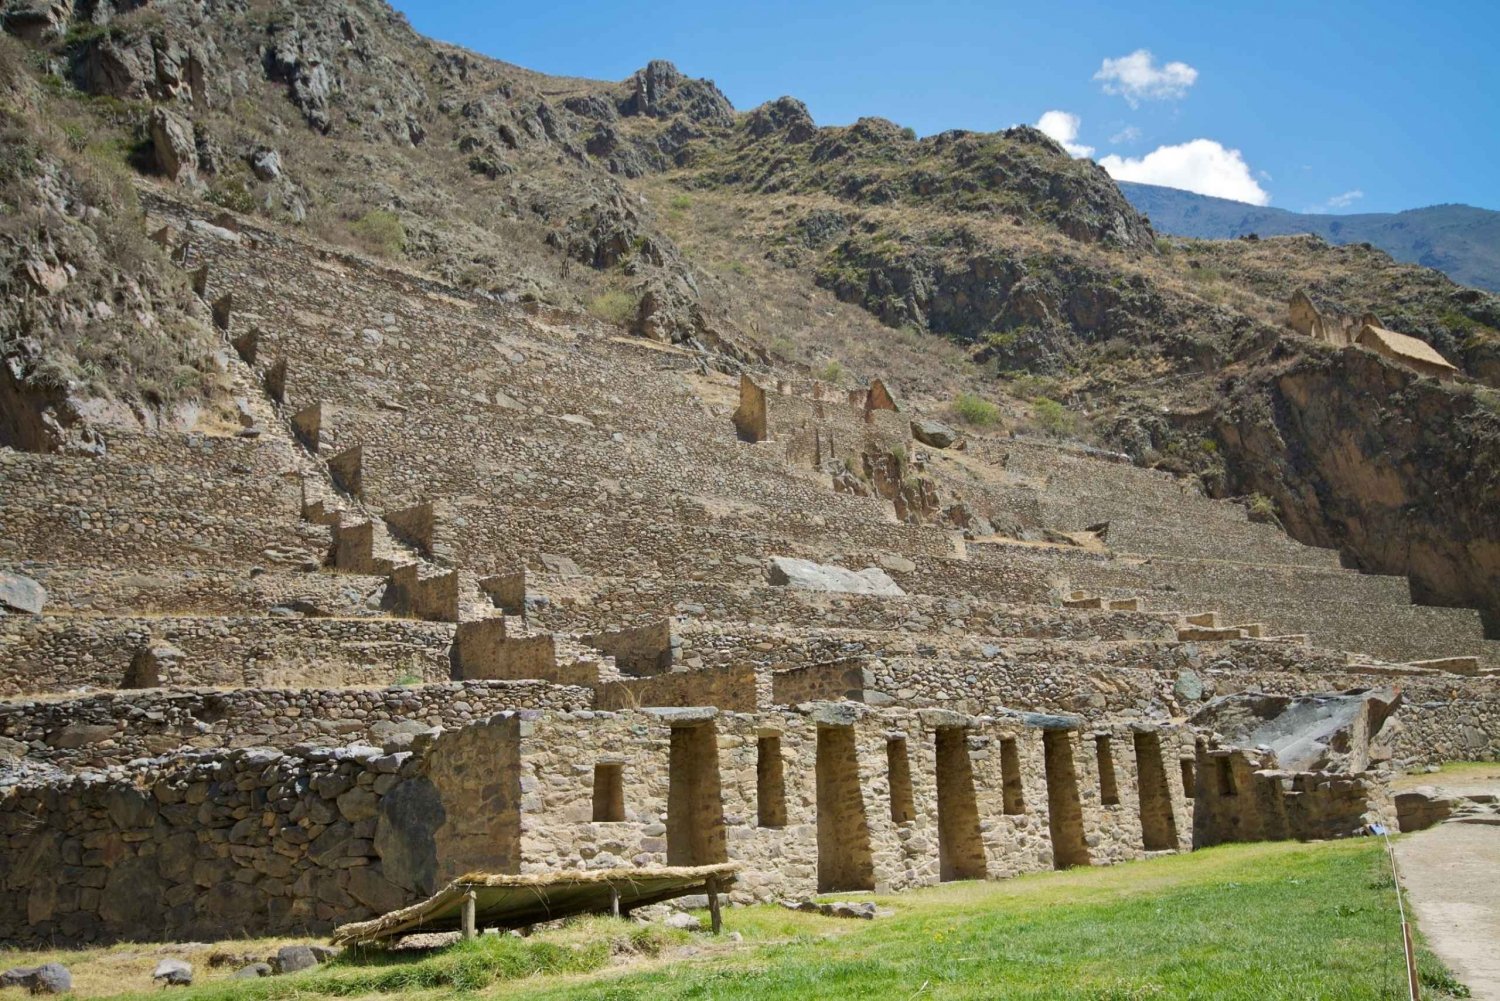 Excursión por el Valle Sagrado de Ollantaytambo a Cusco